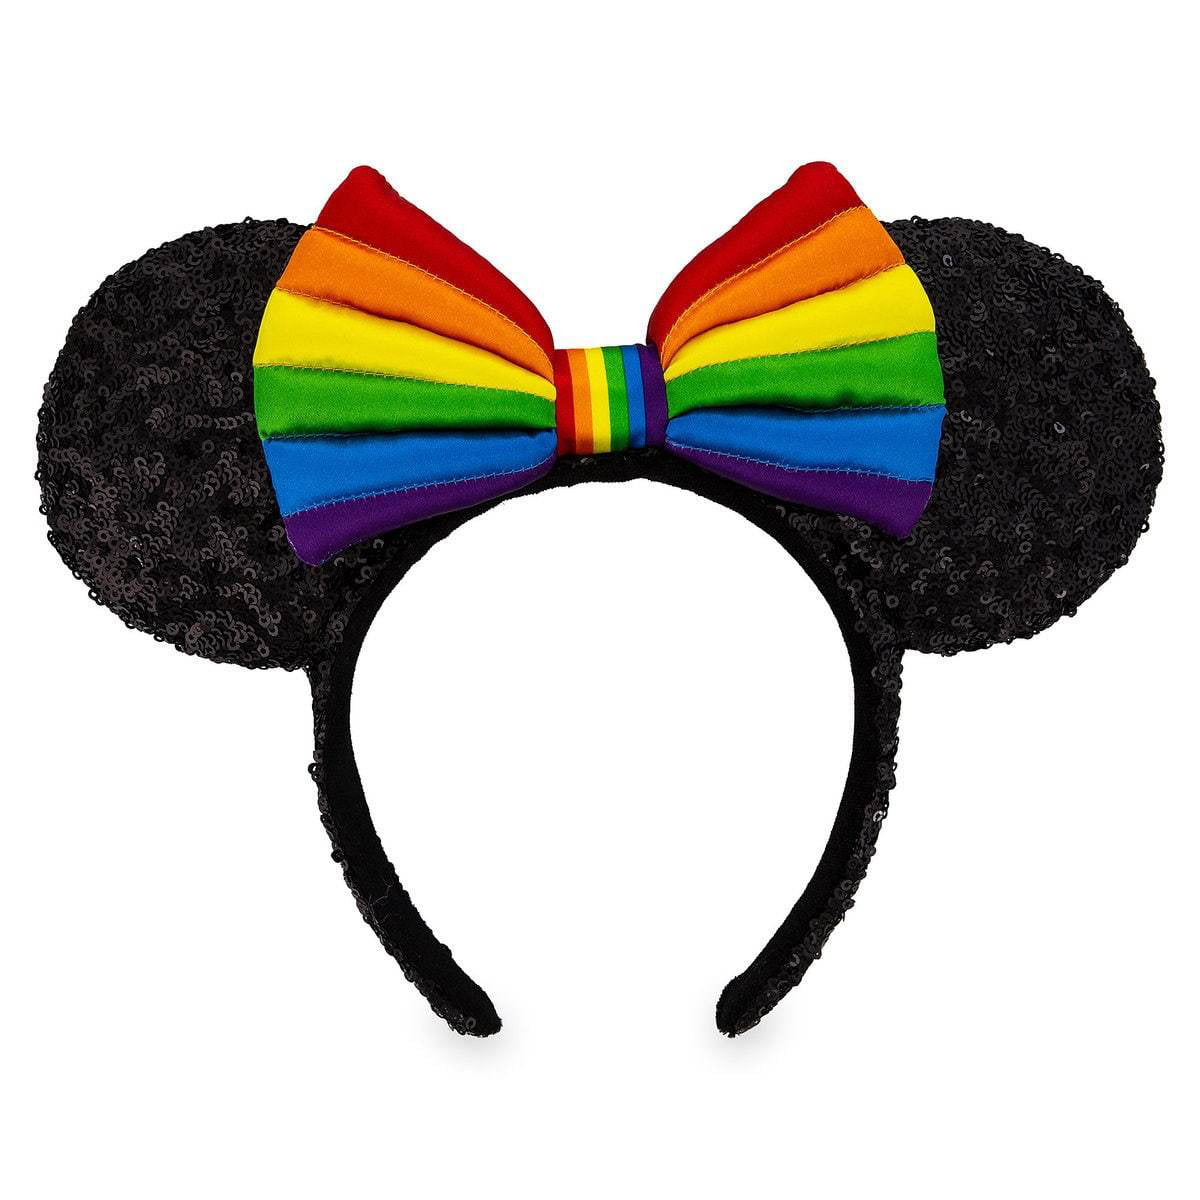 *NEW* Disney Parks RAINBOW Minnie Mouse Ears Headband with Tags 